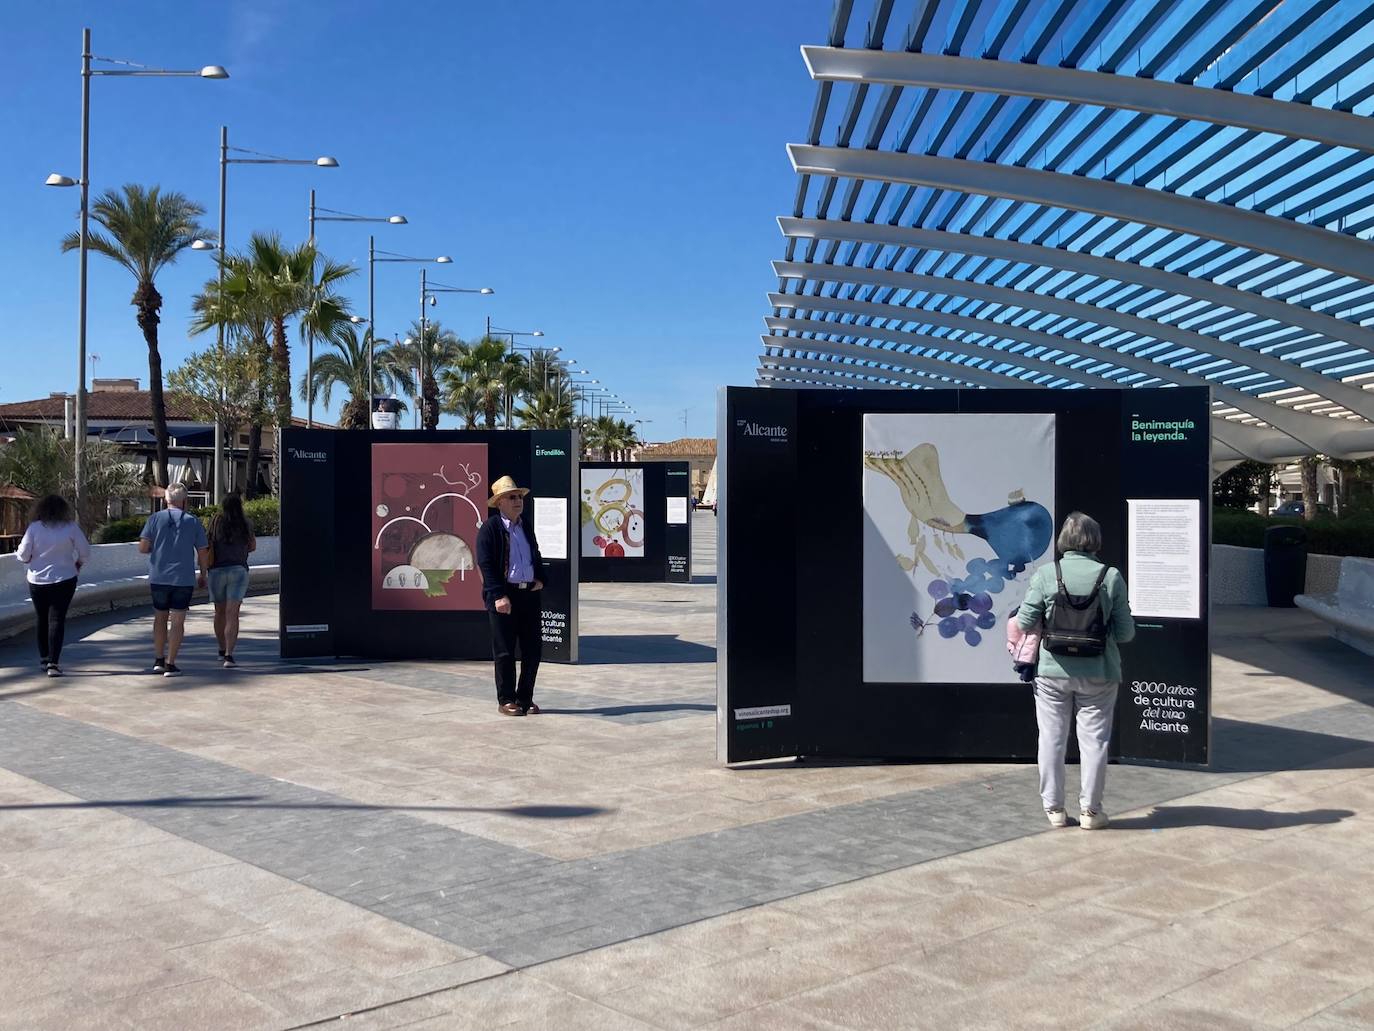 Inauguración de la exposición '3000 años de cultura del vino de Alicante' en Torrevieja.